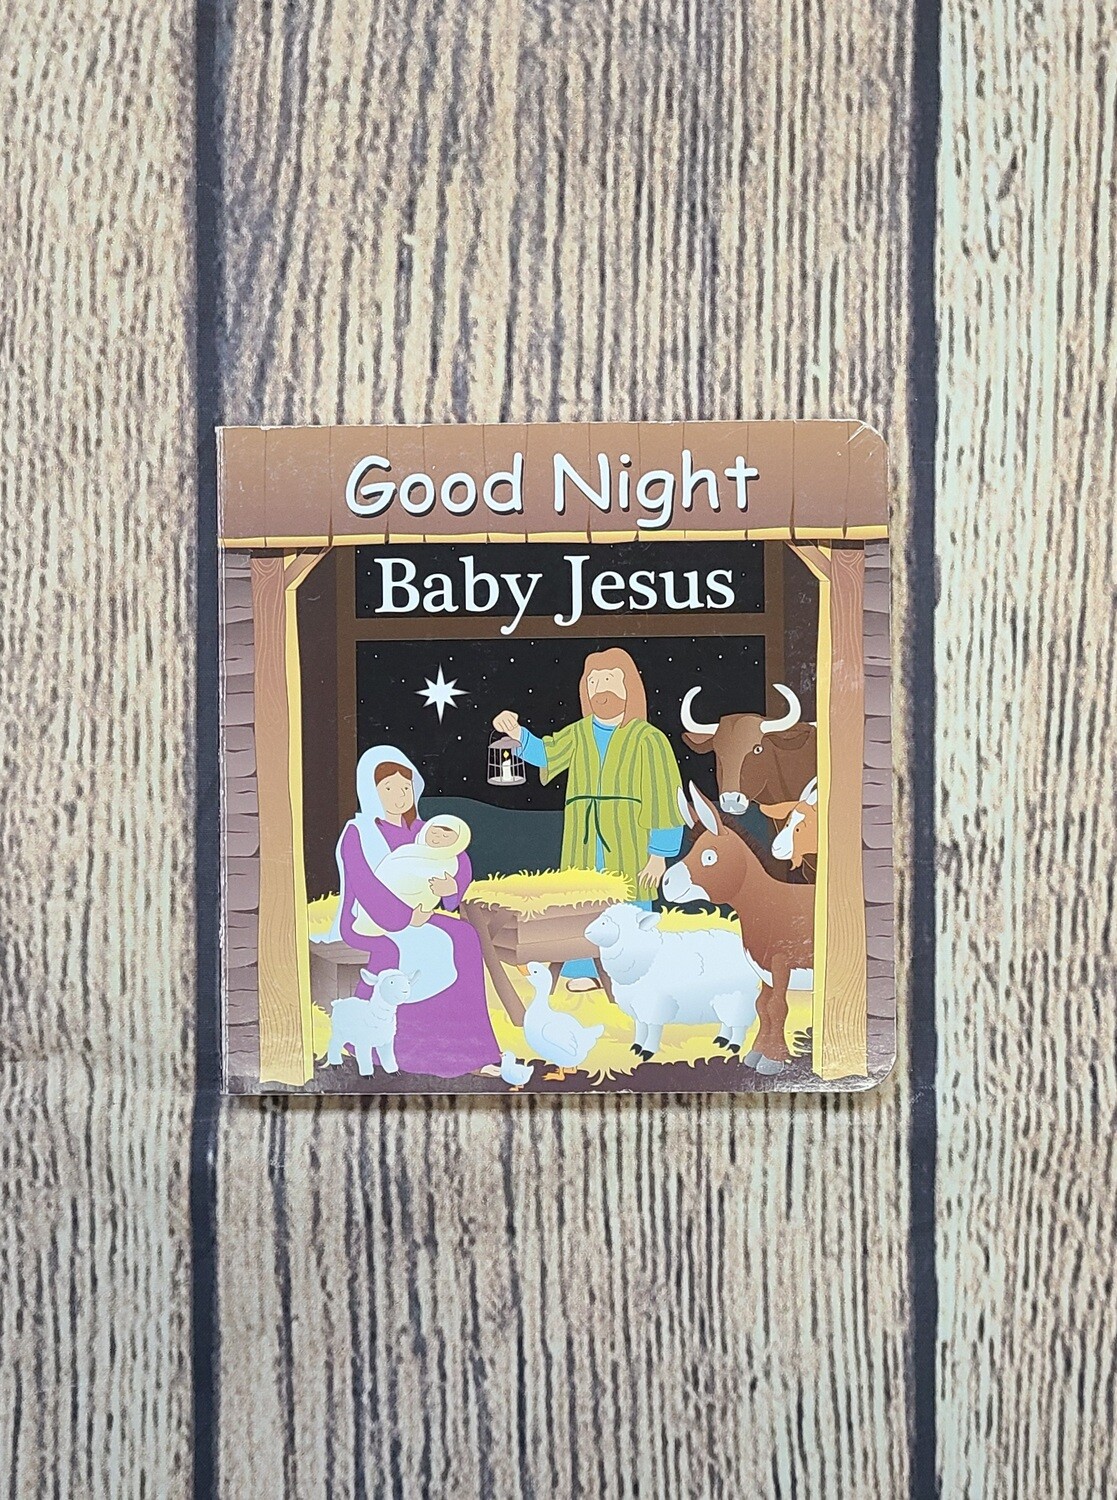 Good Night Baby Jesus by Adam Gamble and Joe Veno